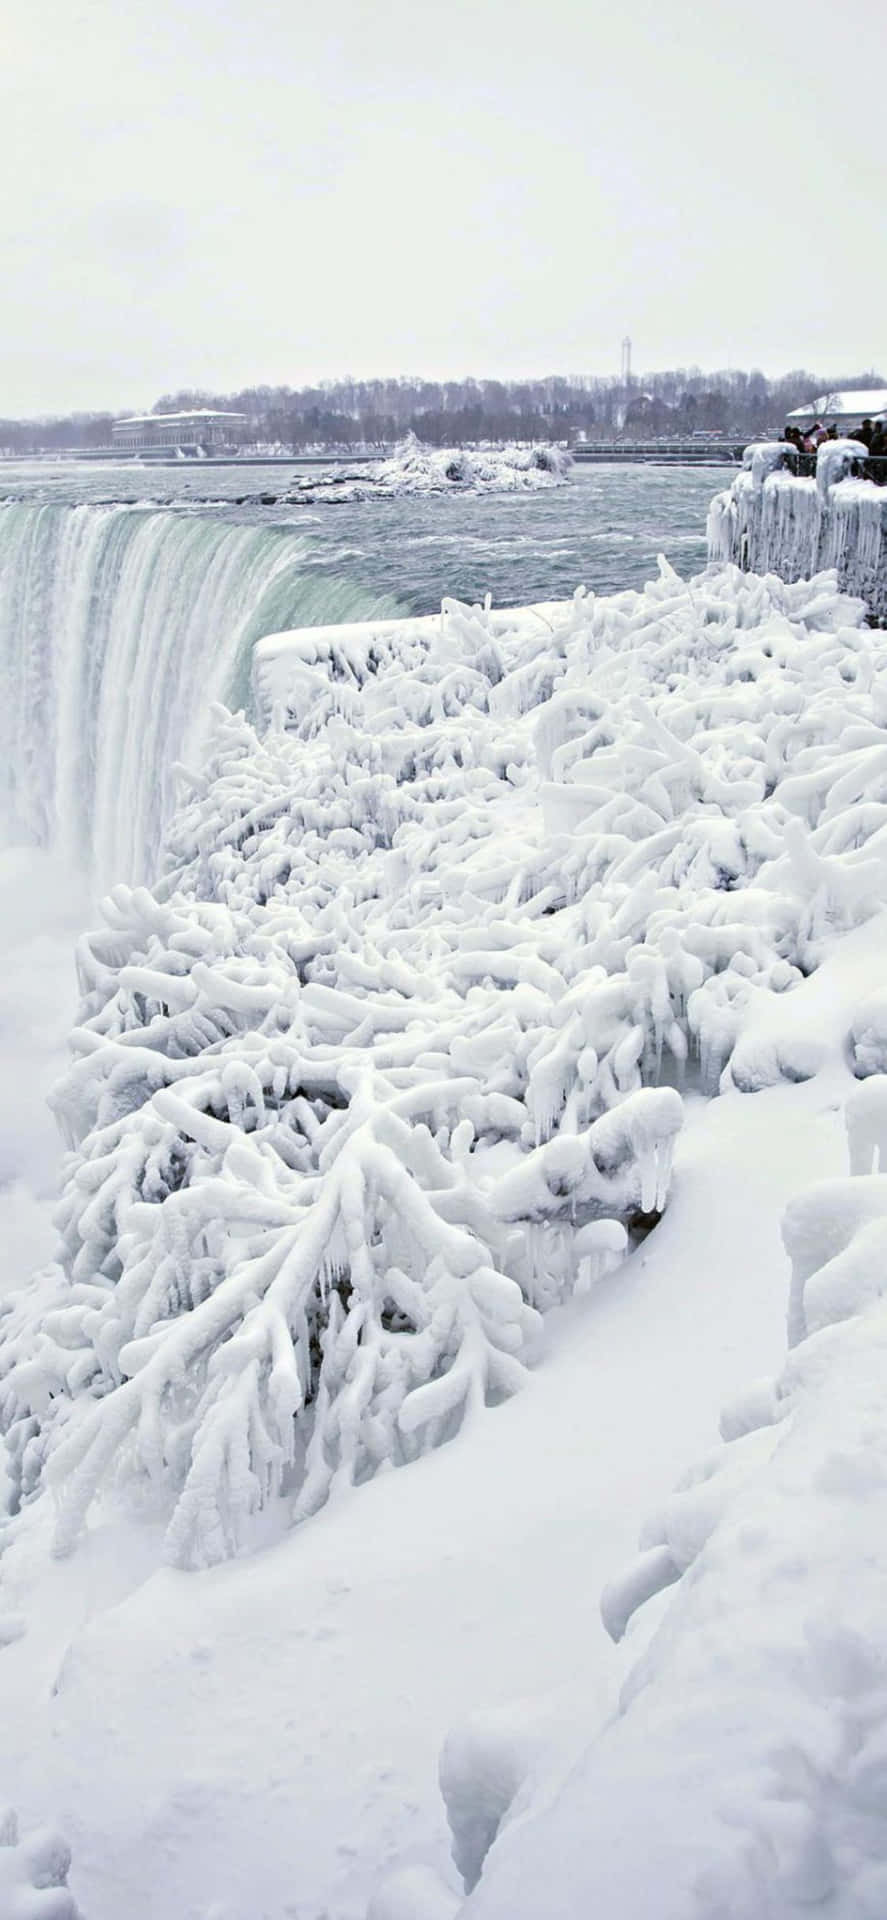 Sfondoinvernale Delle Cascate Del Niagara Per Iphone X